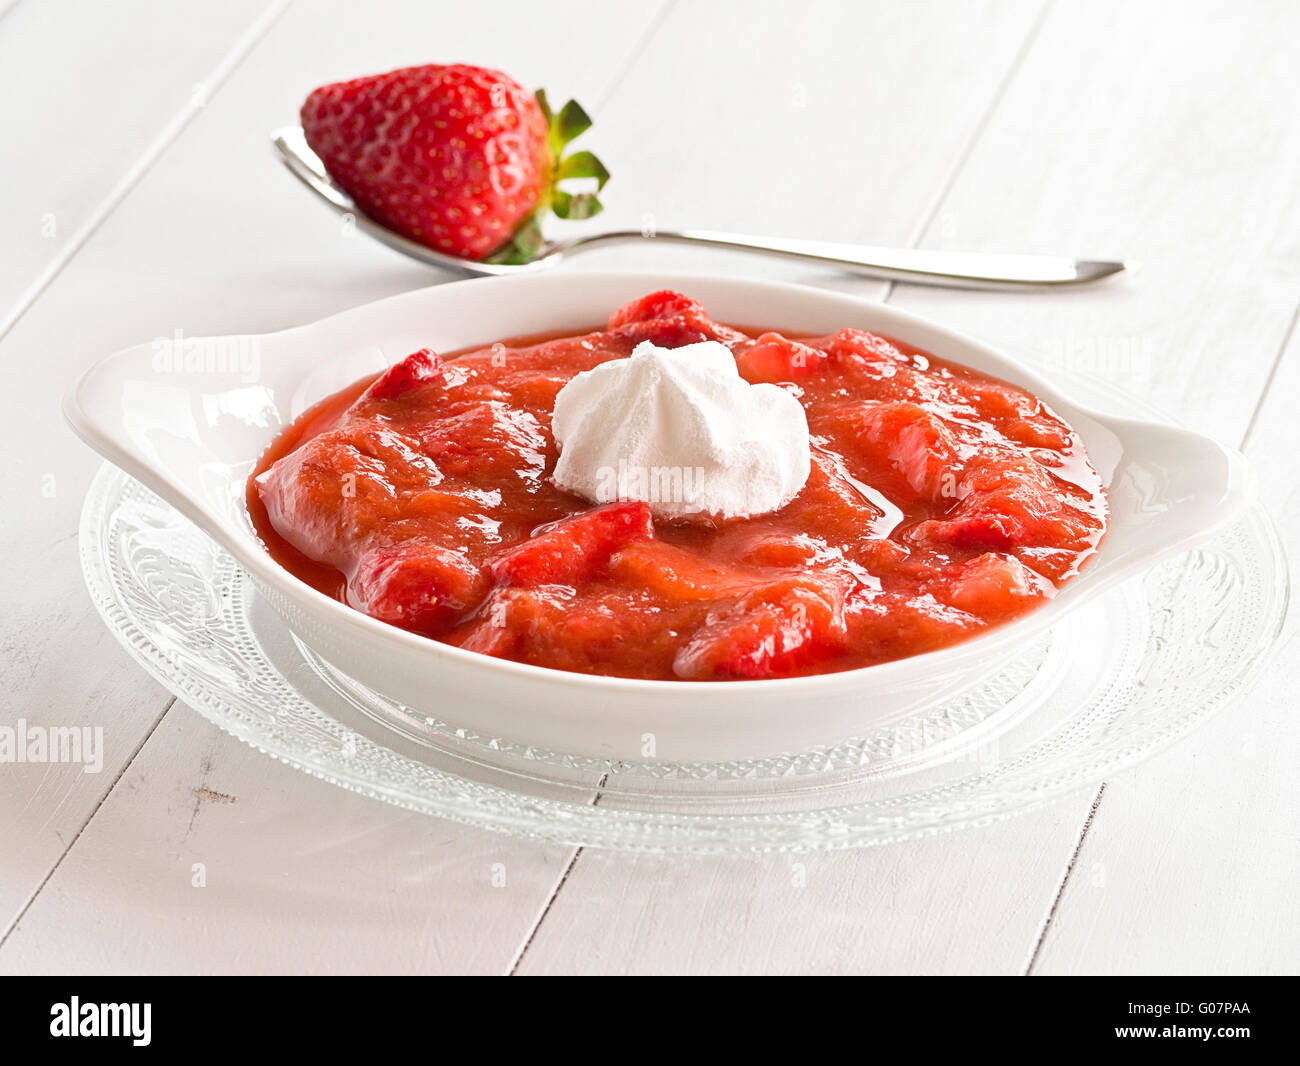 Rhubarbe compote de fraises fraises fraîches Banque D'Images